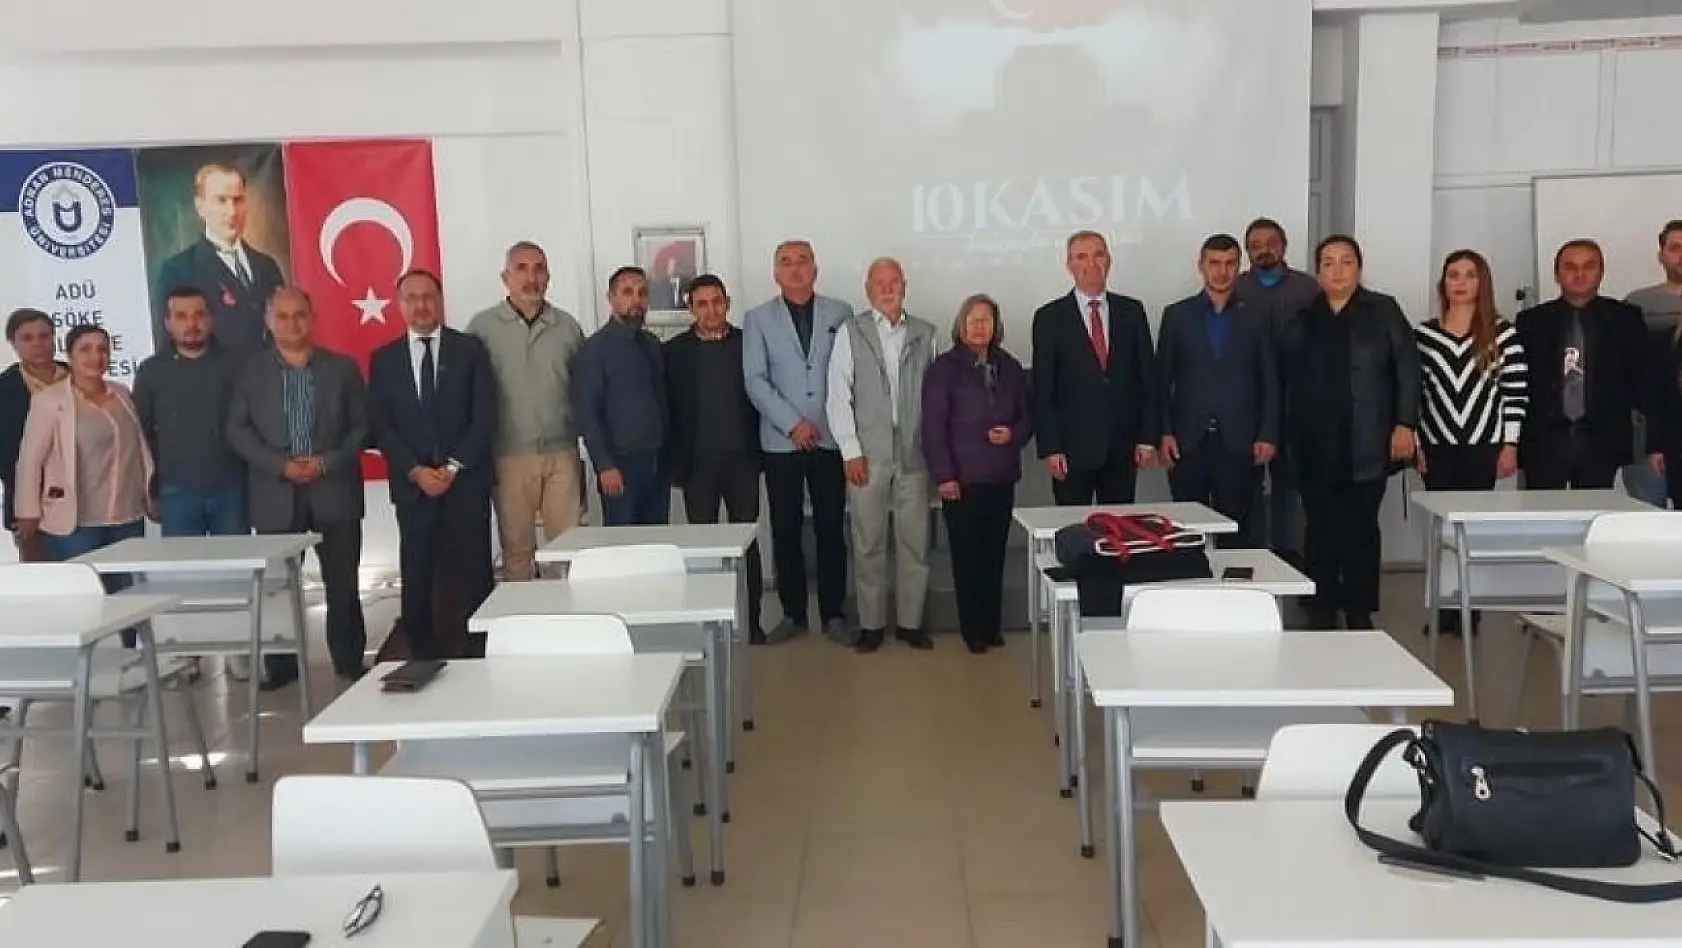 Söke İşletme Fakültesi'nde 'Atatürk ve Cumhuriyet' konferansı